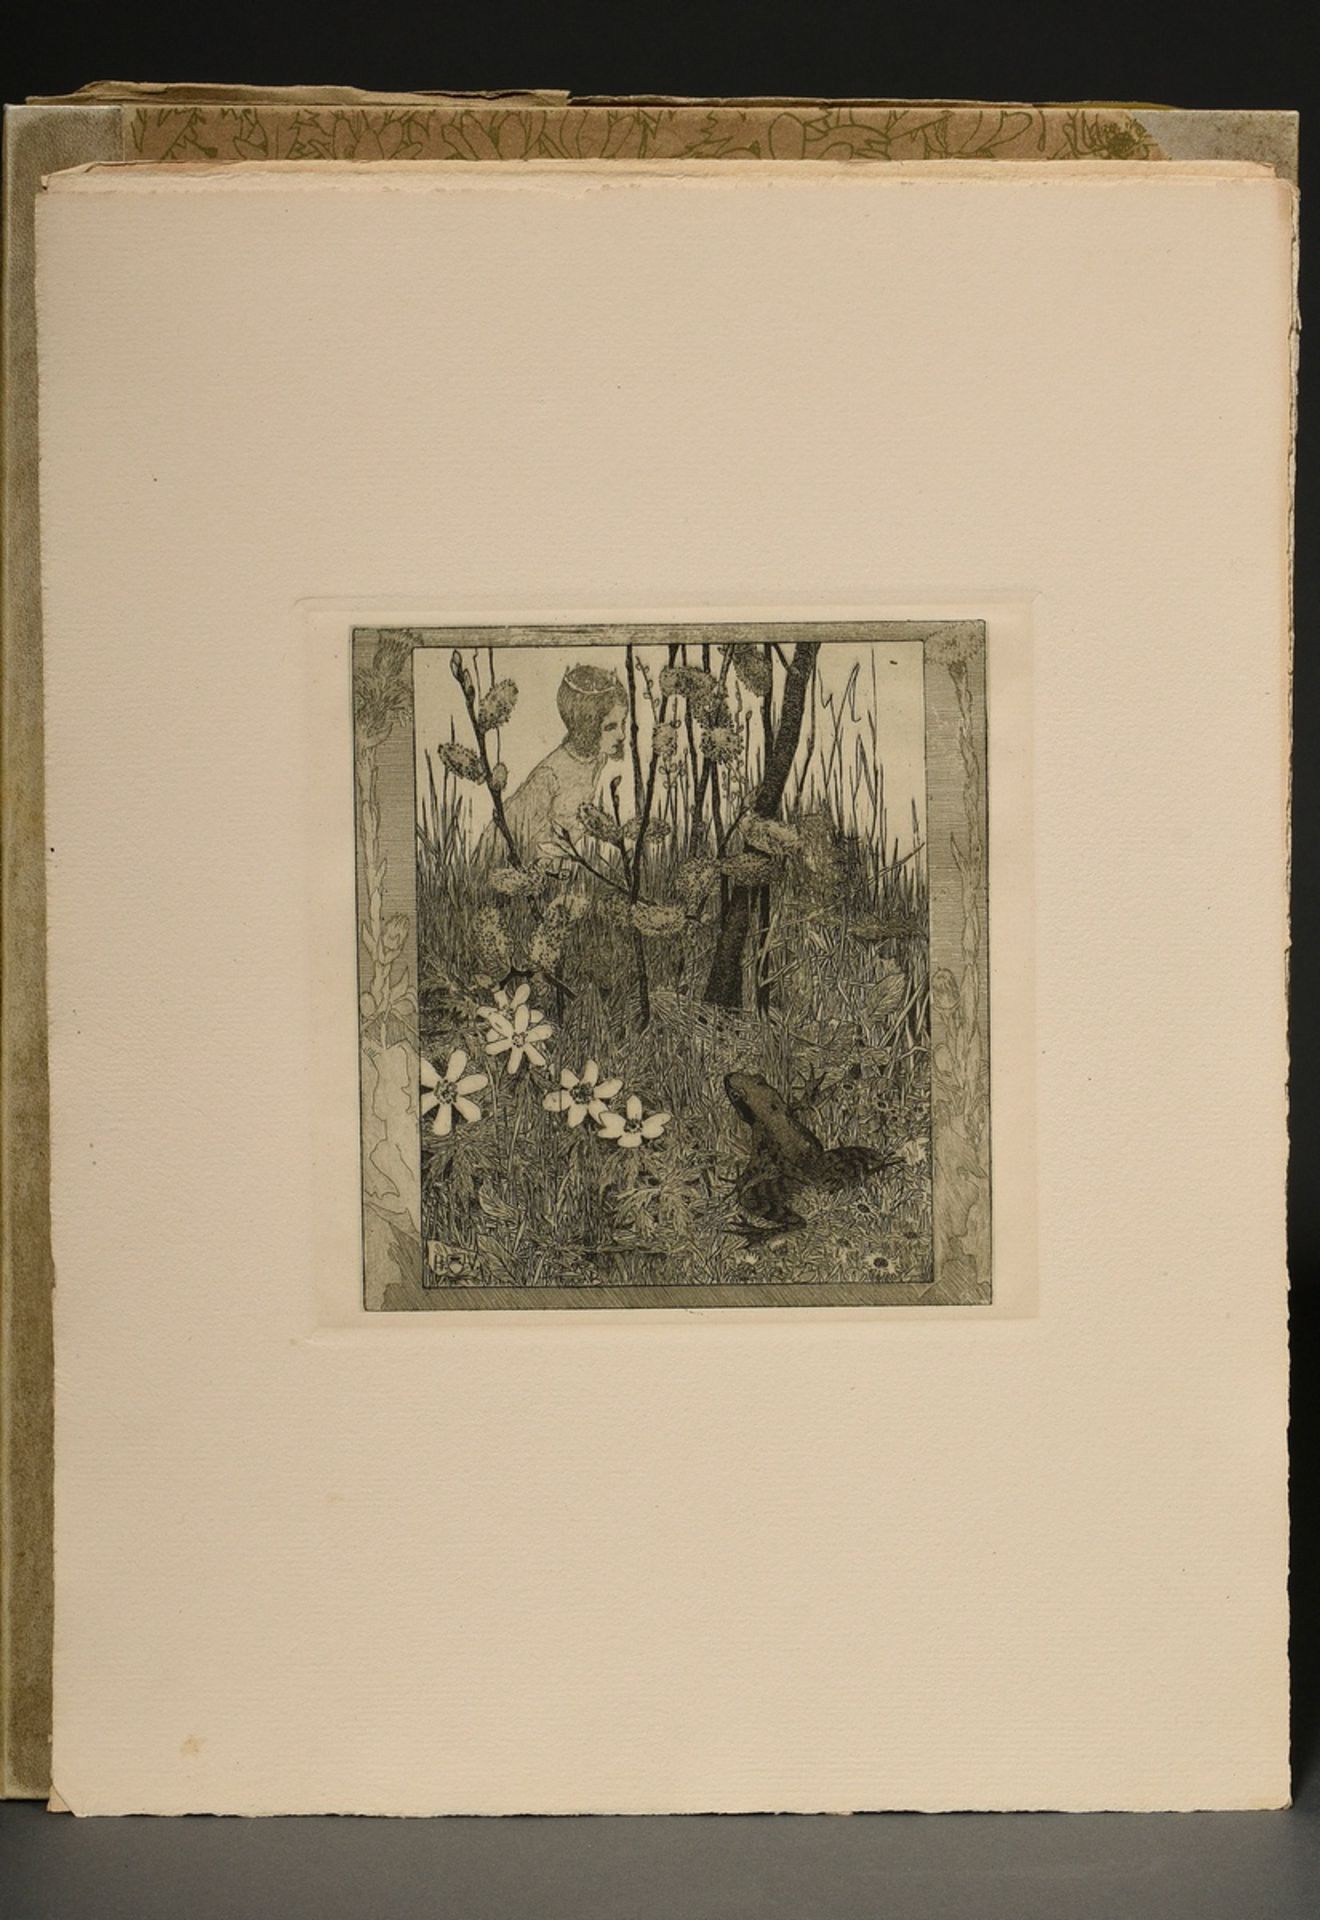 Vogeler, Heinrich (1872-1942) "An den Frühling" 1899/1901, portfolio with 10 etchings and prelimina - Image 6 of 25